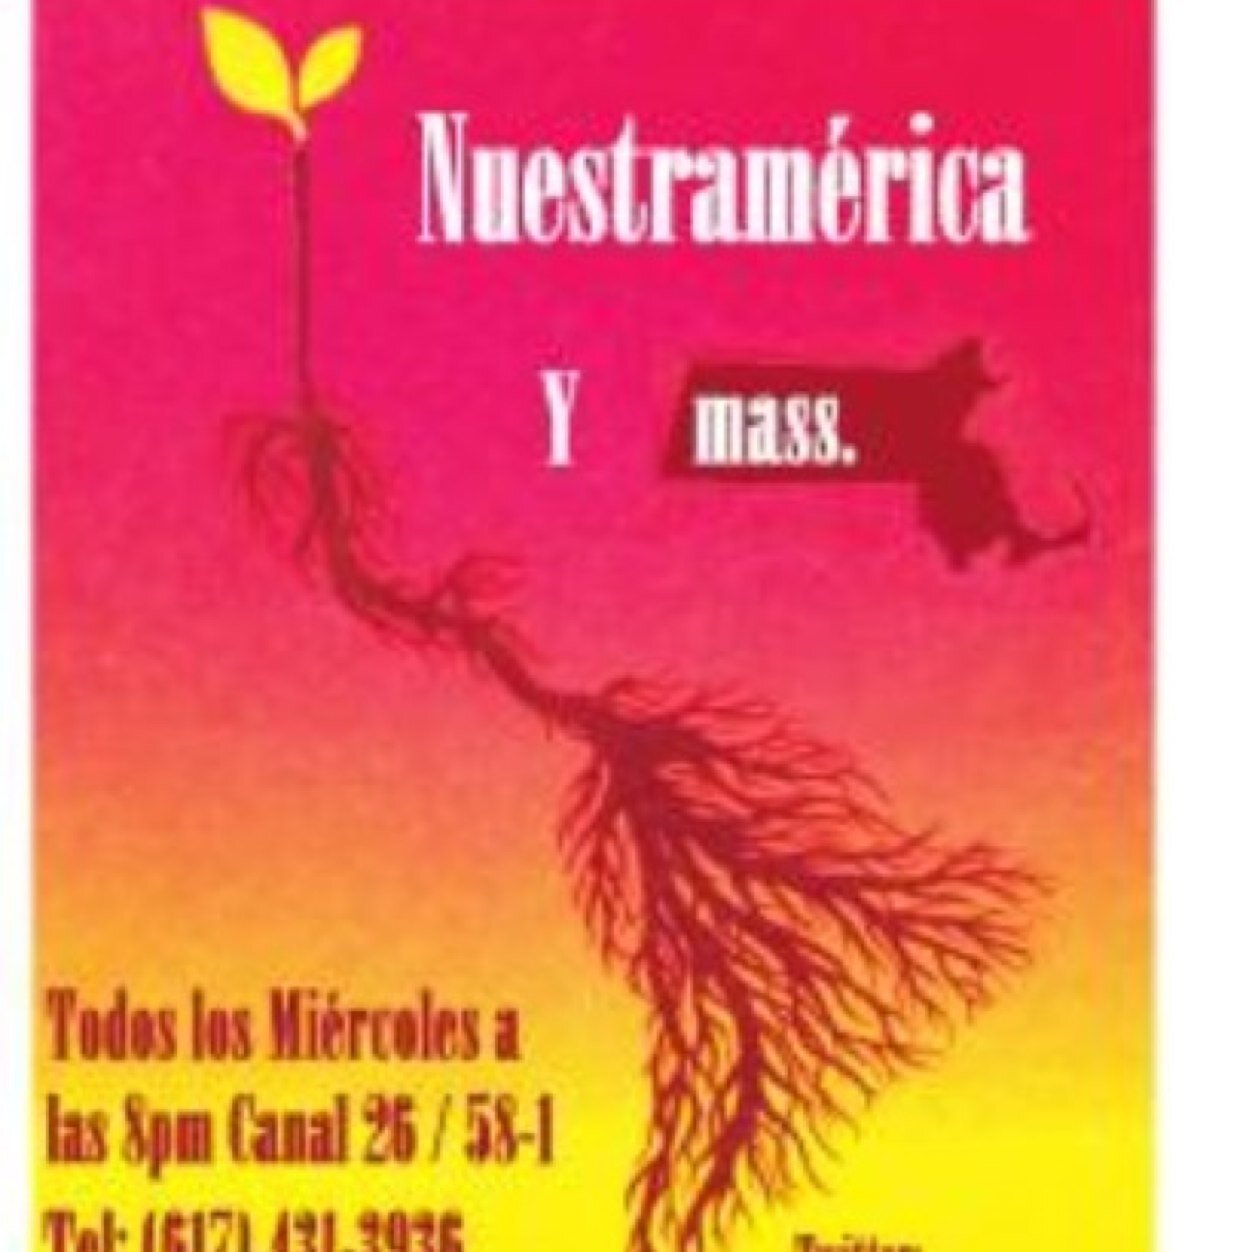 Nuestramerica, programa informativo de TV para la comunidad latinoamericana en la region de Boston MA.